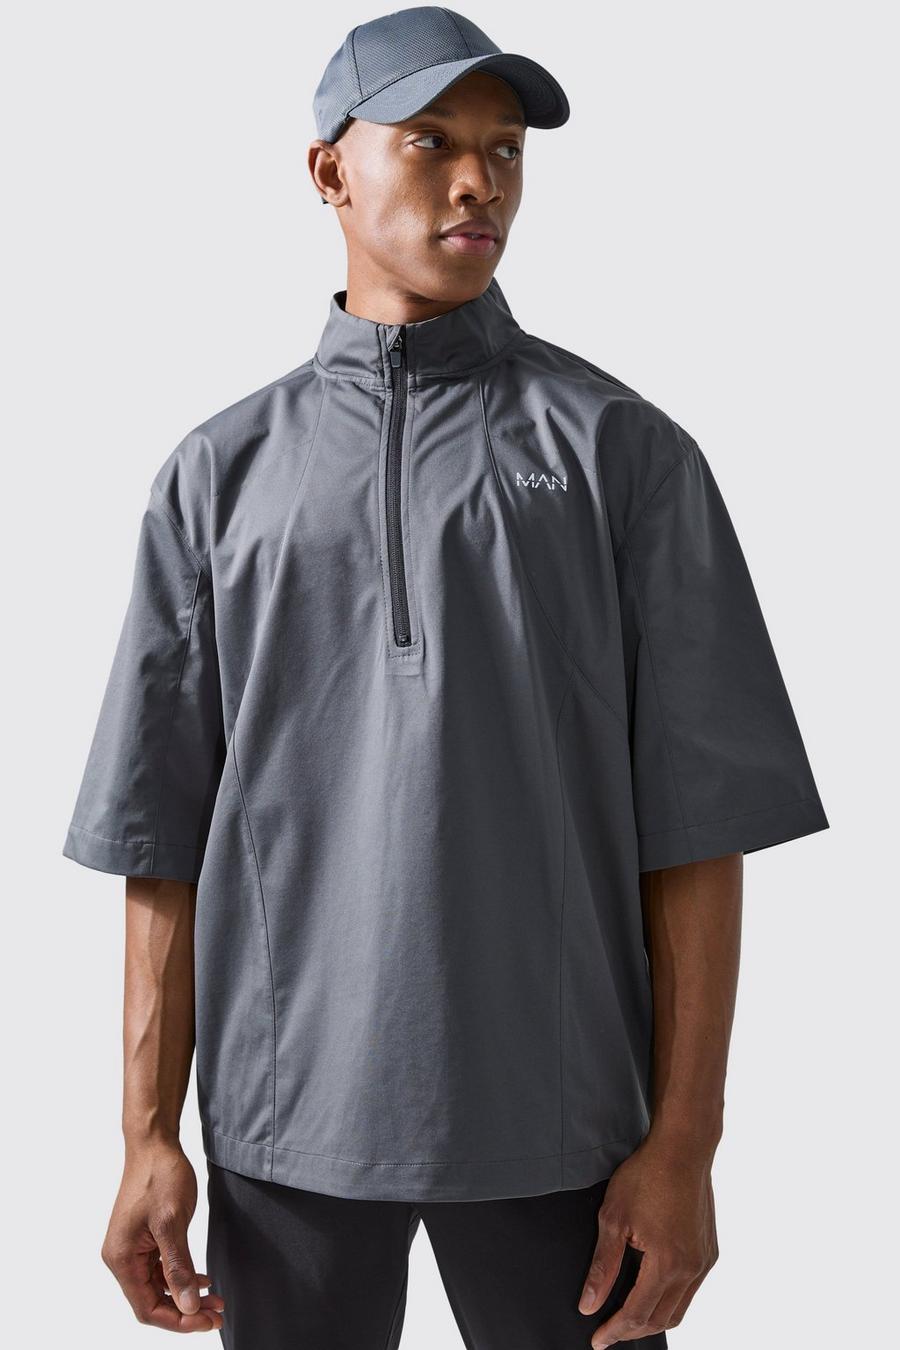 Man Active Oversize Golf Jacke mit Trichterkragen und Reißverschluss, Charcoal